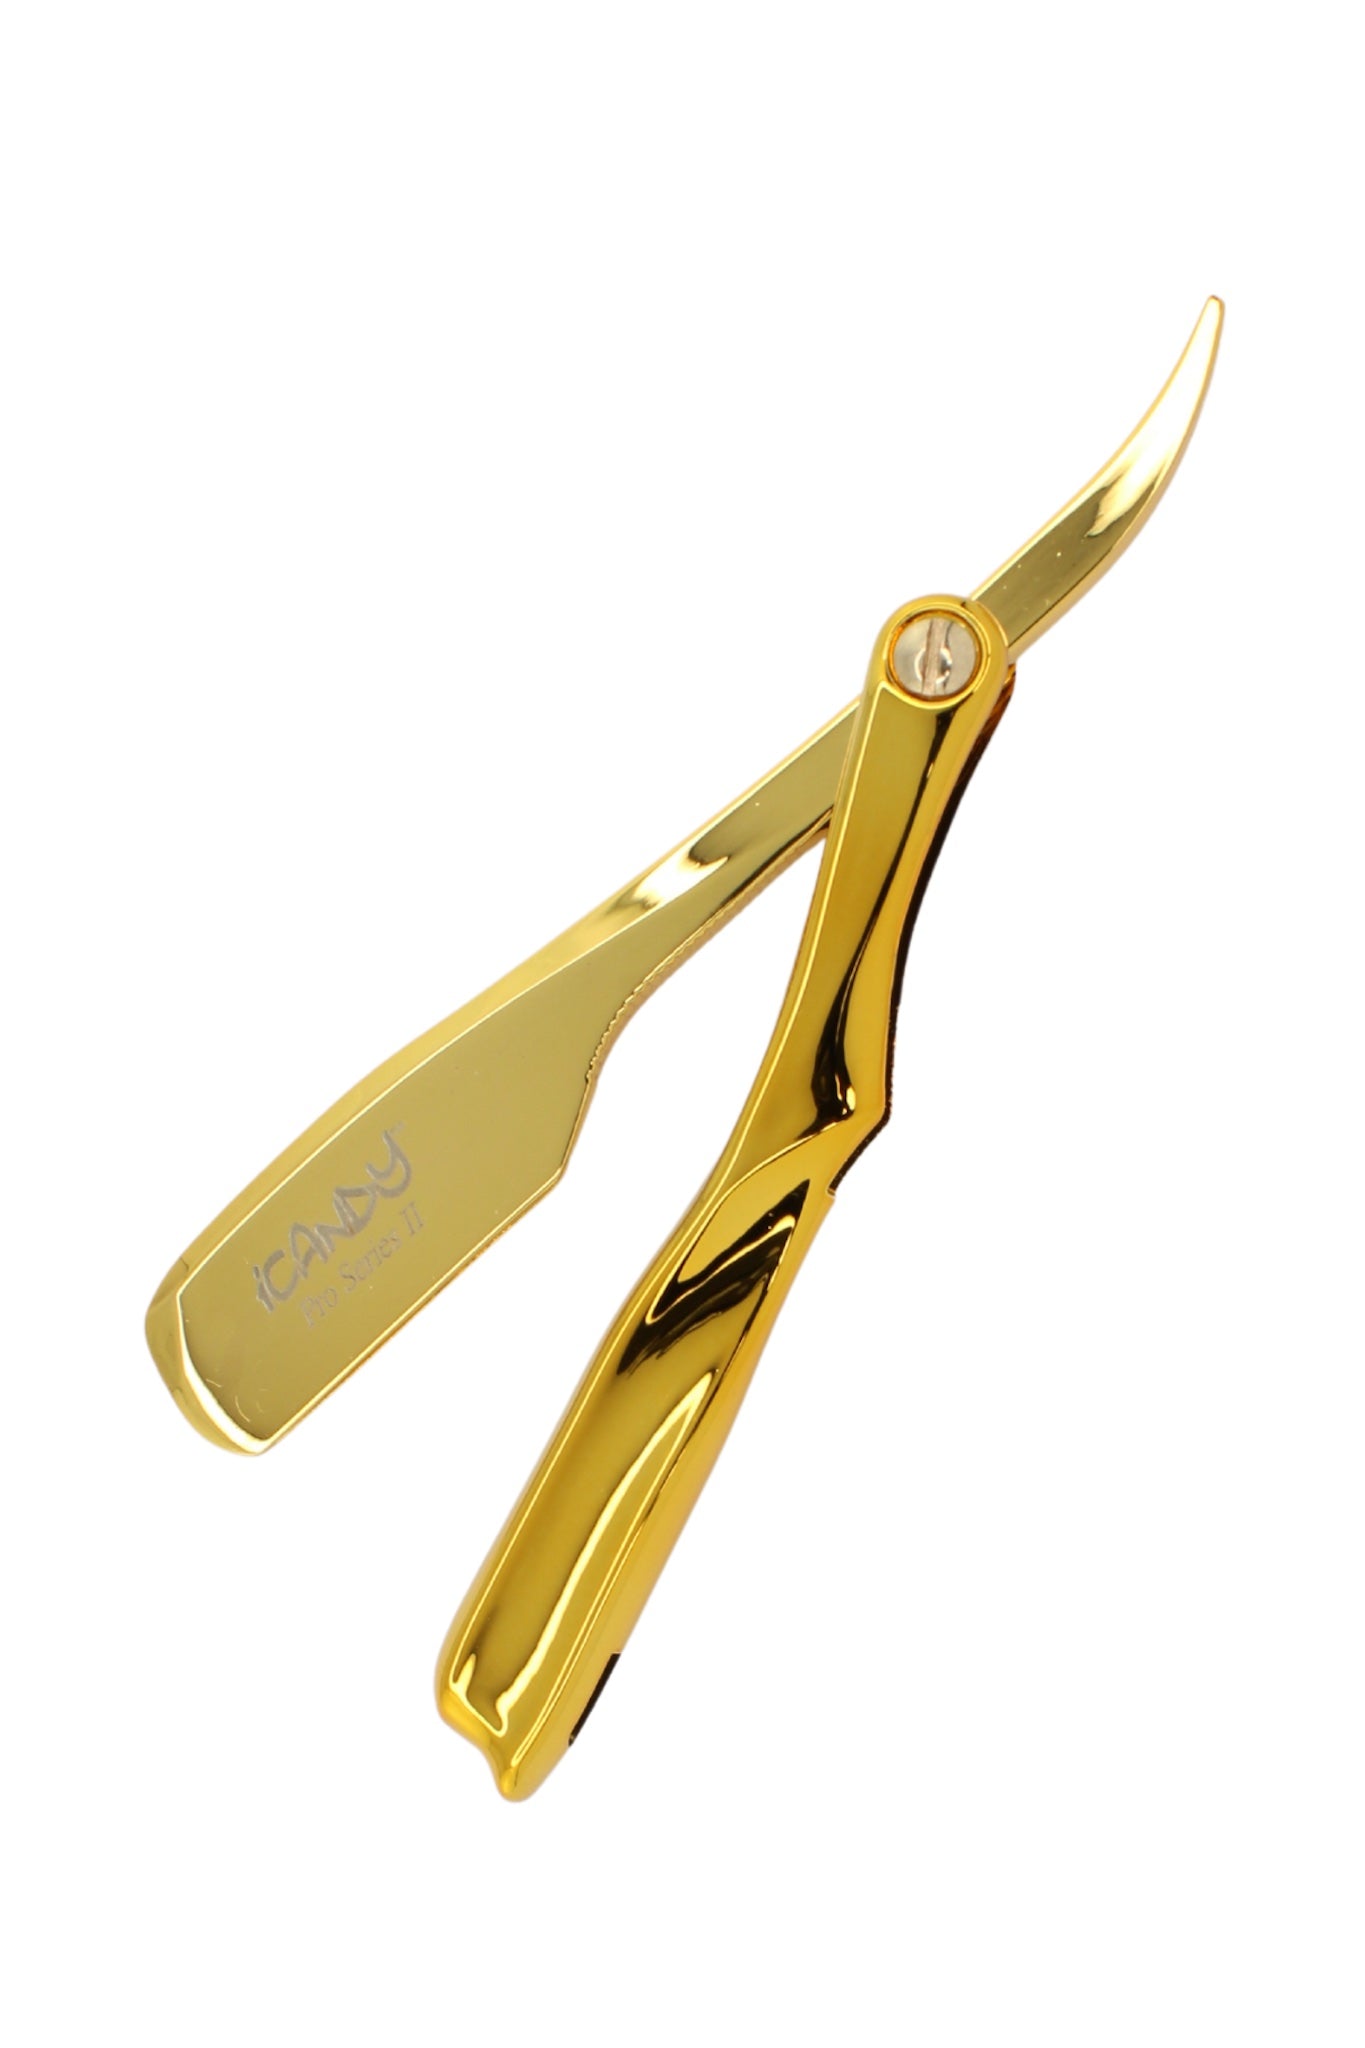 iCandy Pro Series II Yellow Golden Barber Shaving Razor 